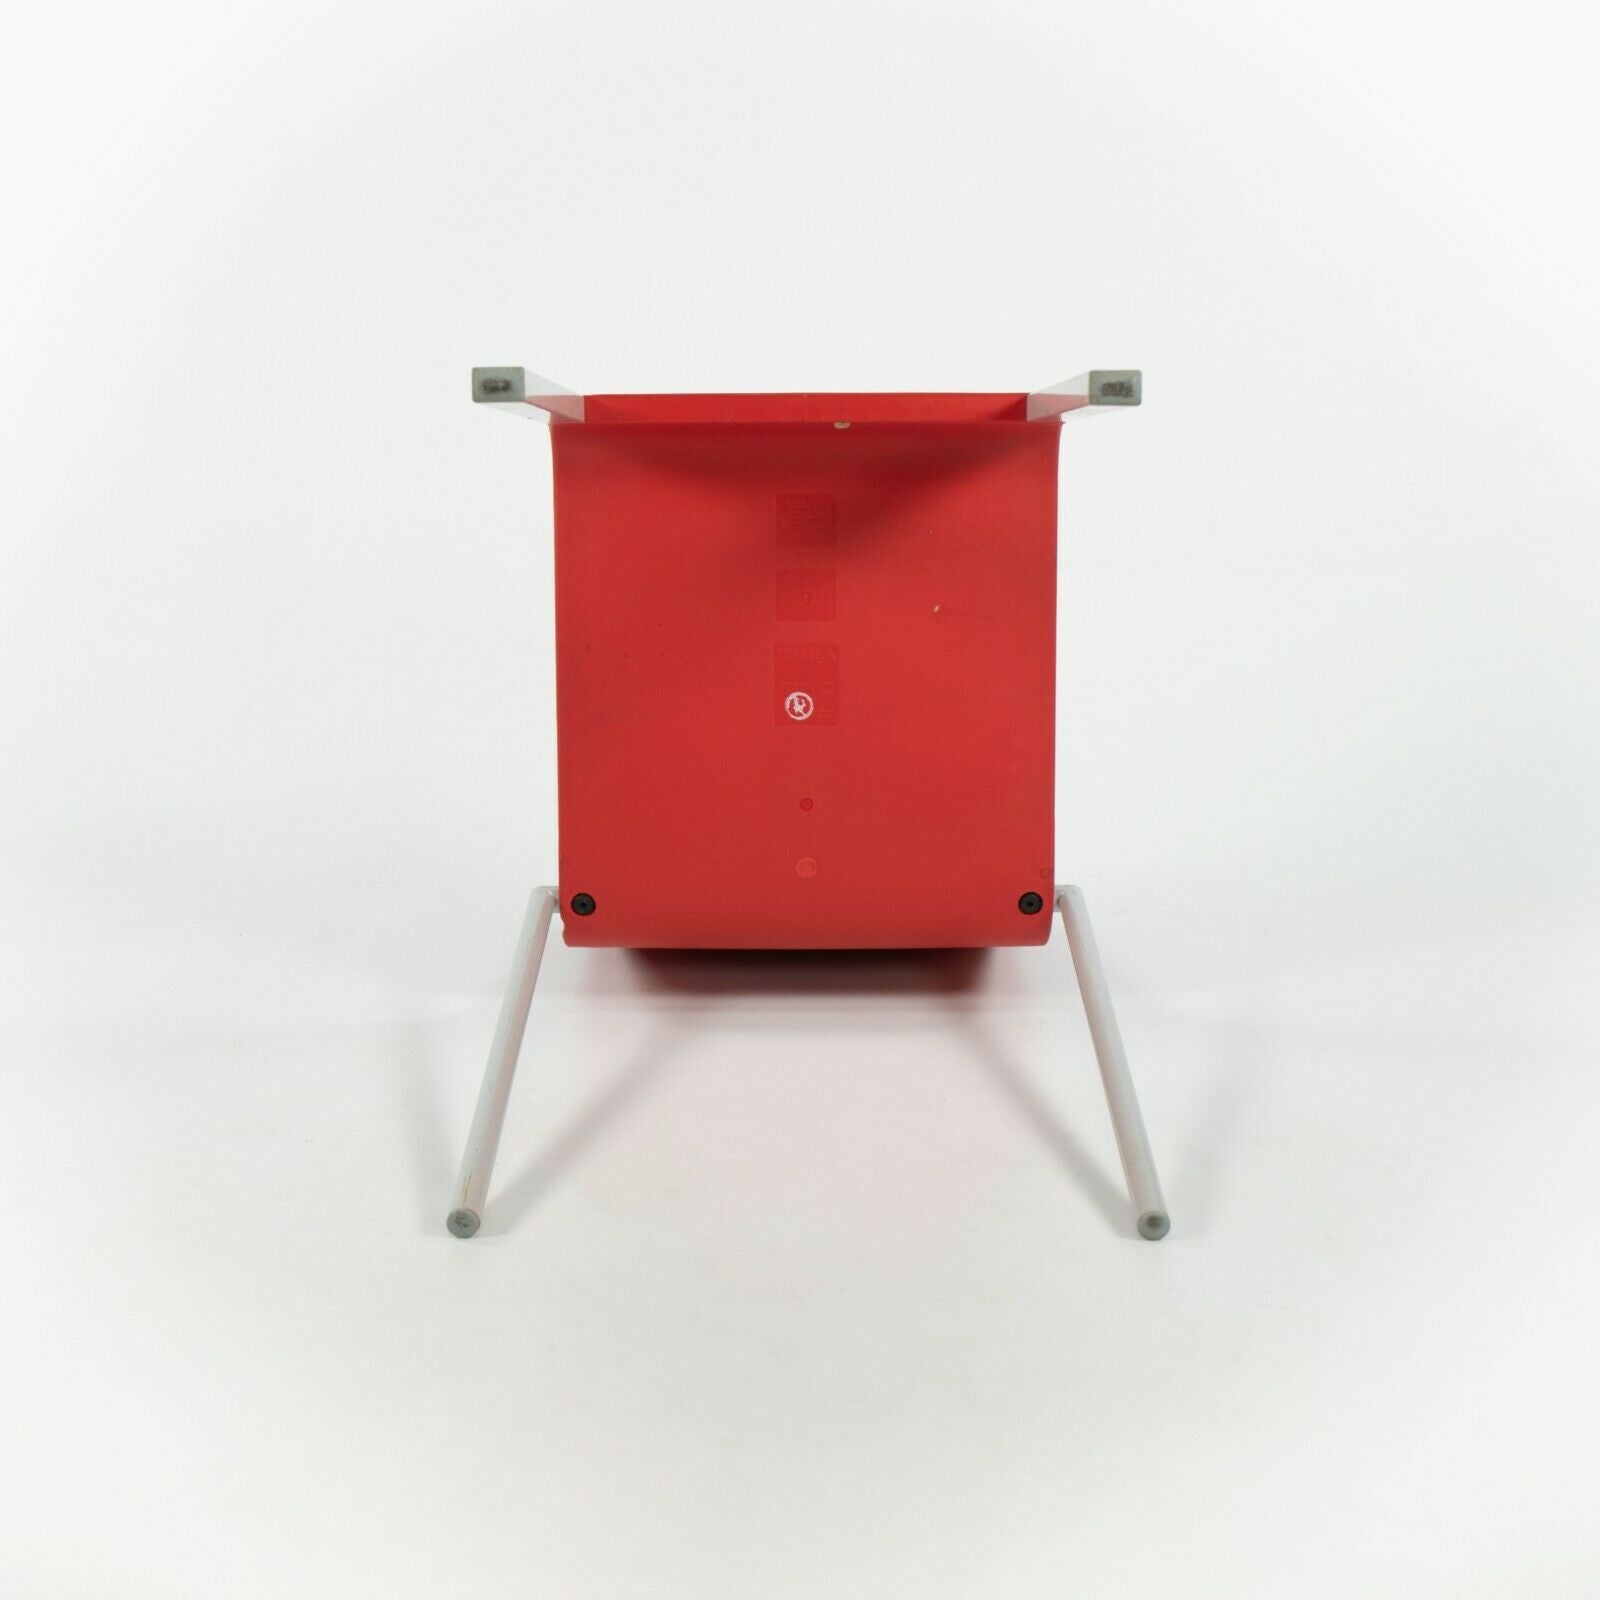 2010s Vitra .03 Stacking Chairs by Maarten Van Severen in Red